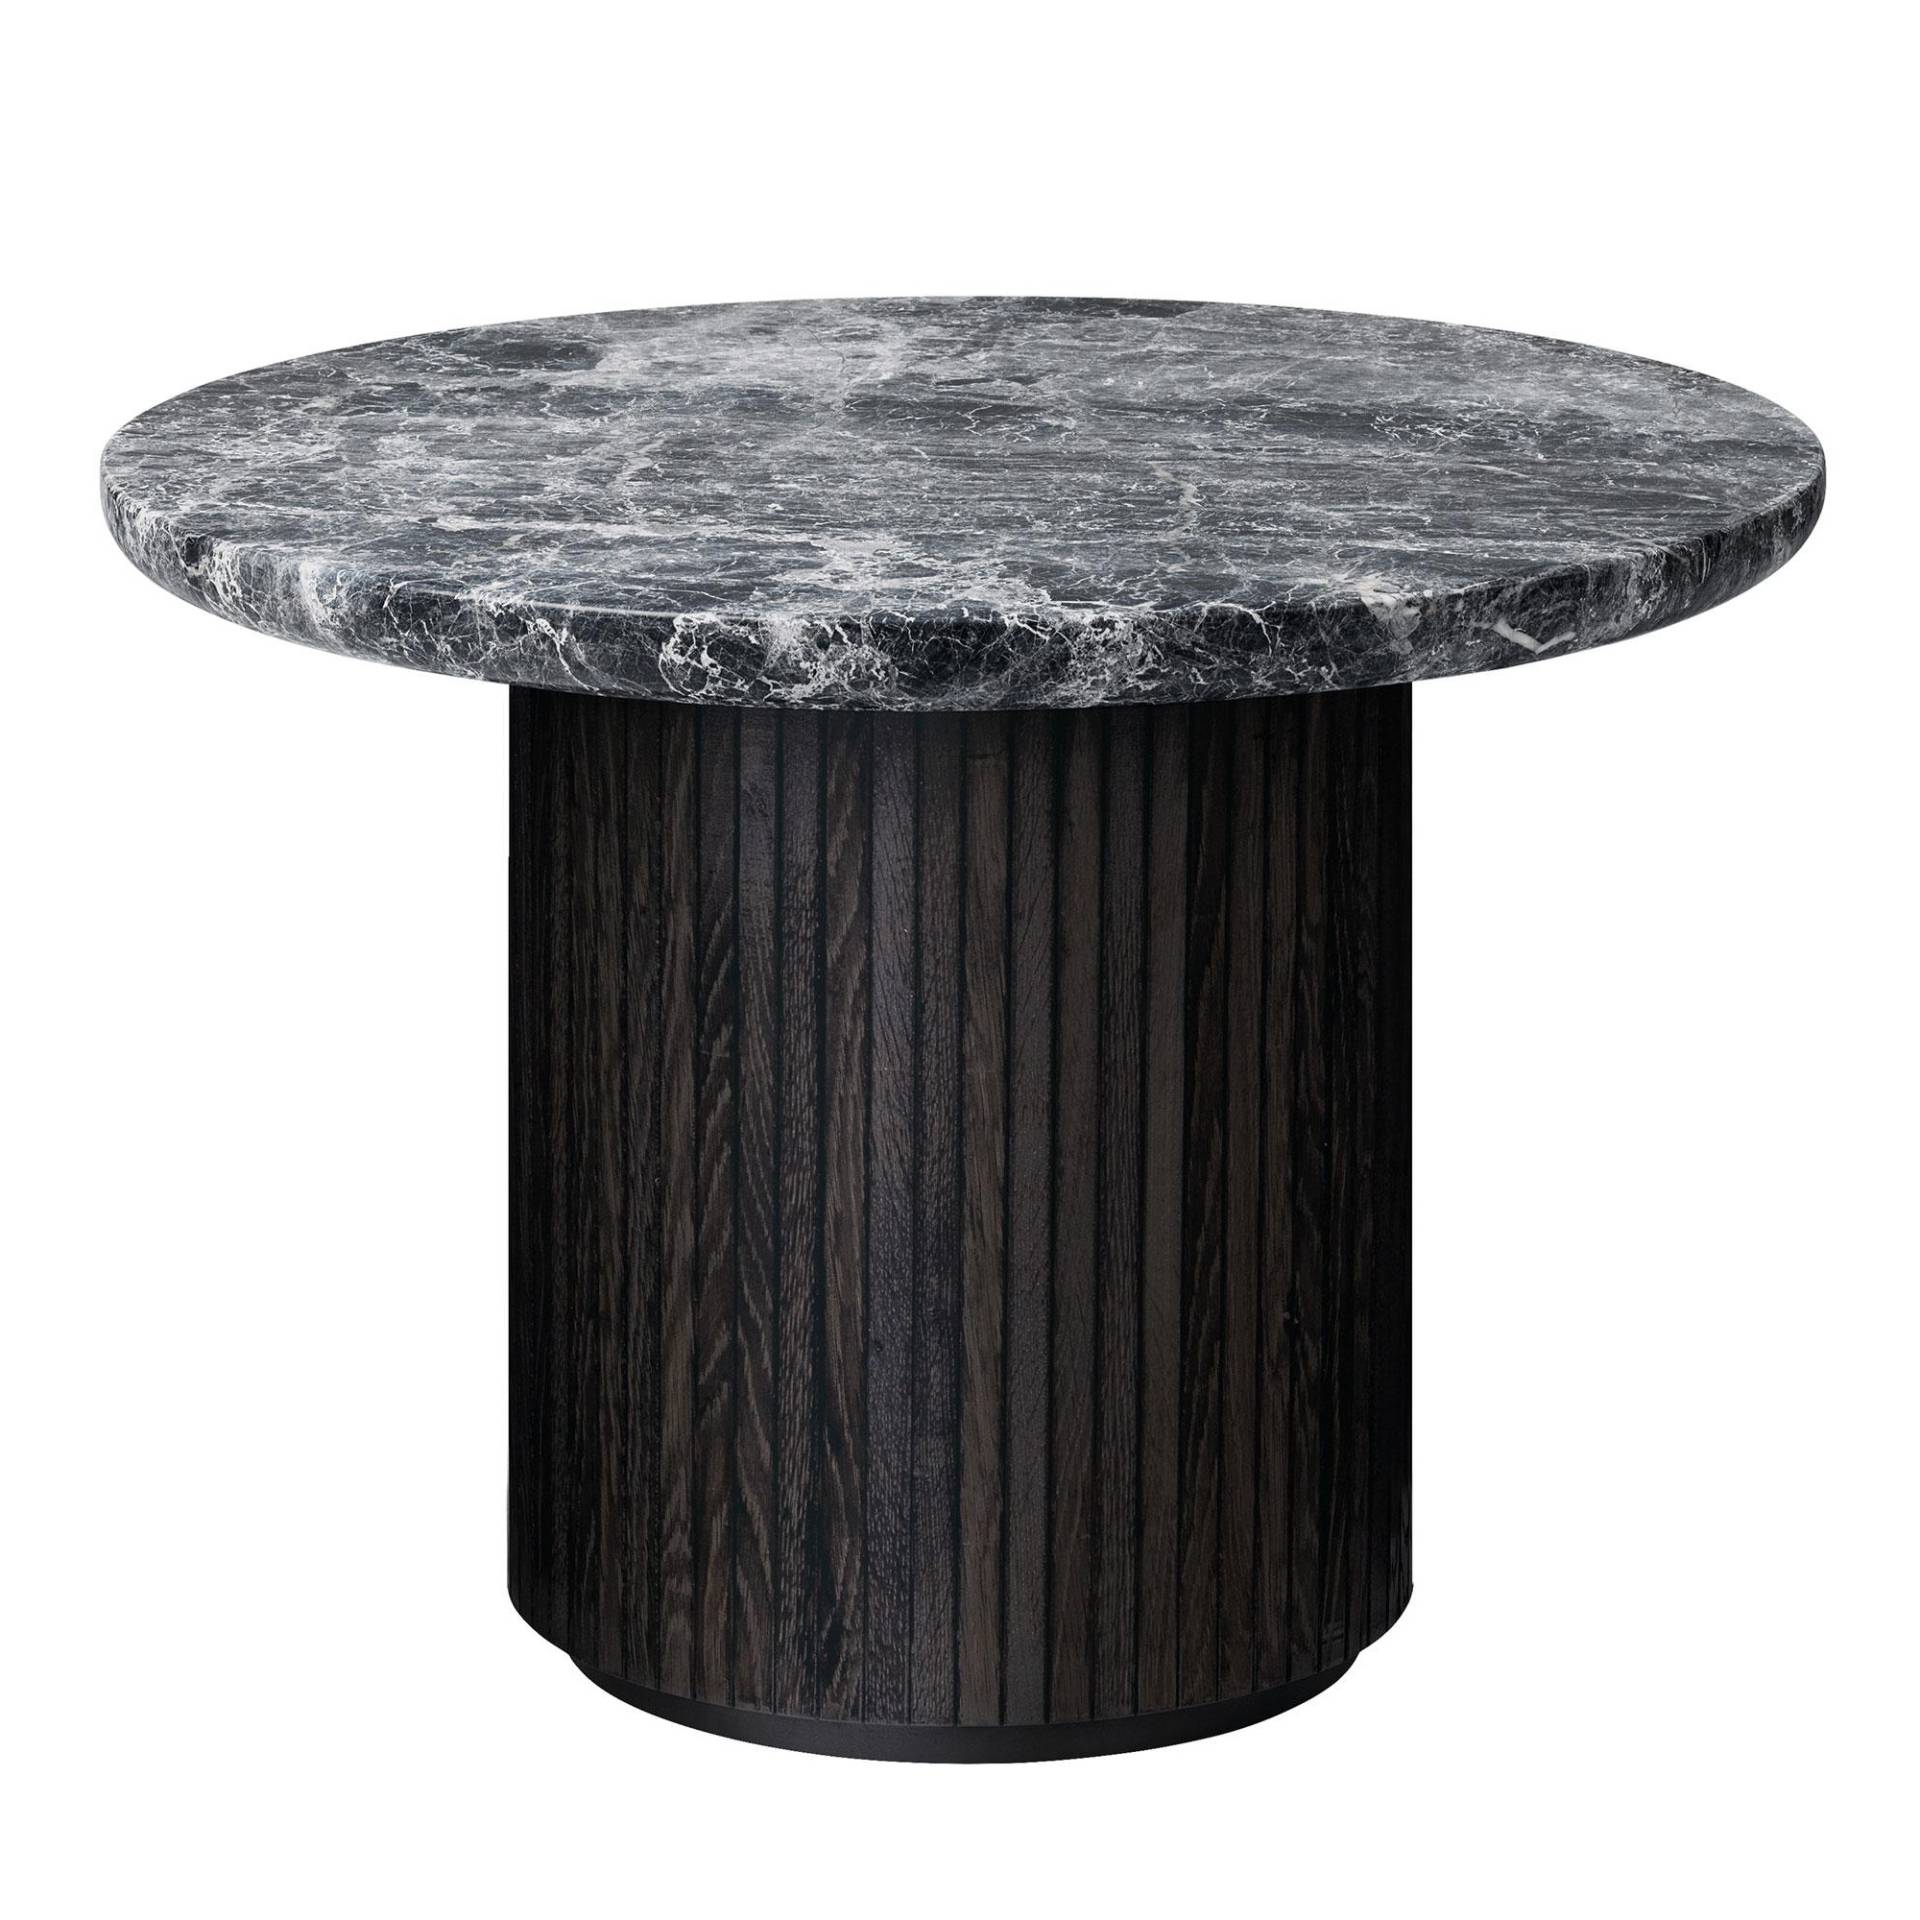 Gubi - Moon Couchtisch Ø60cm - grau/schwarz/Tischplatte Marmor Grey Emperador/Gestell Holz schwarz/H 45cm / Ø 60cm von Gubi